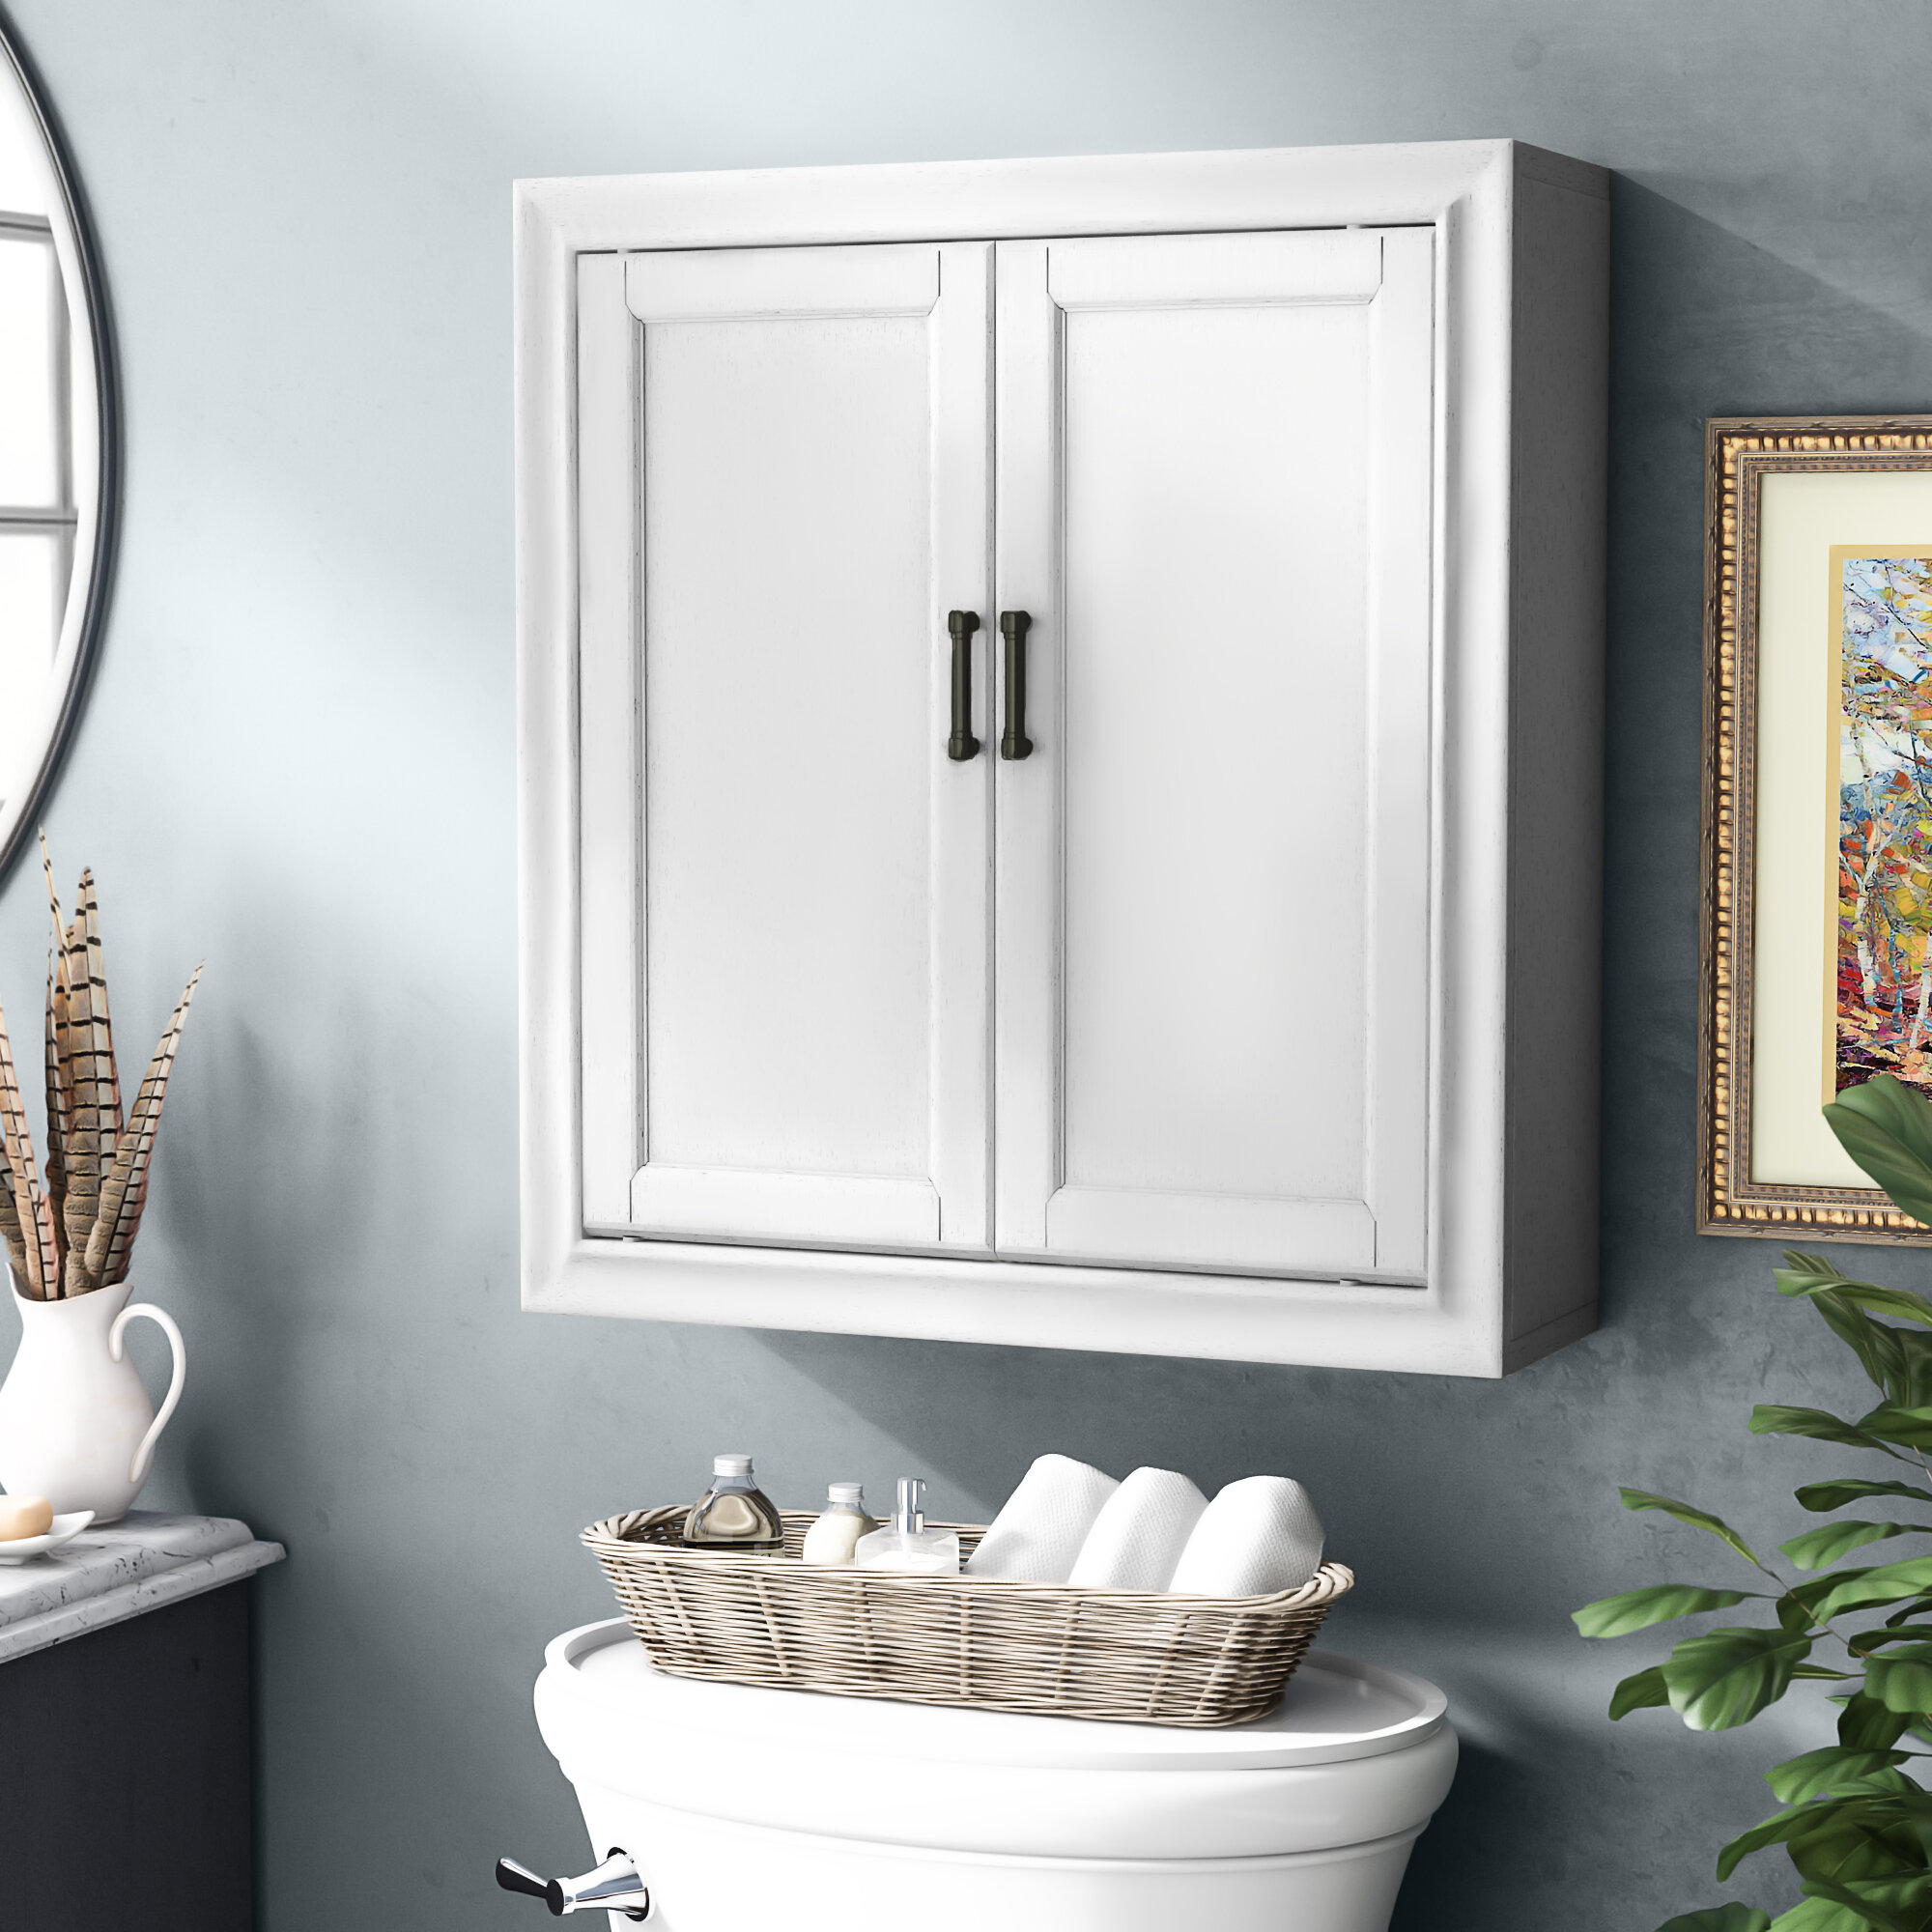 Wall Mounted Bathroom Cabinets You Ll Love In 2020 Wayfair